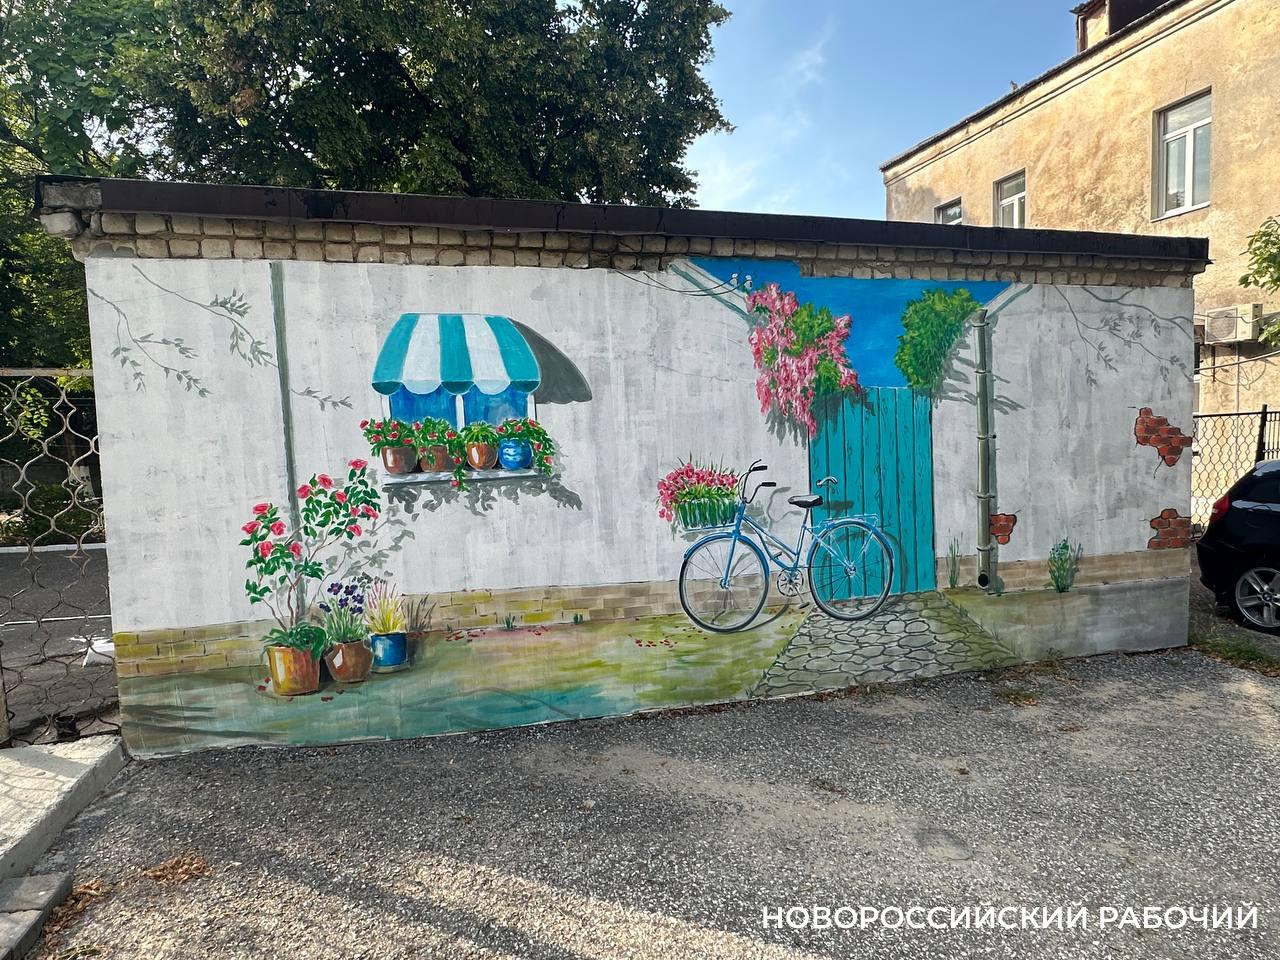 Неприглядная стена в Новороссийске стала летним пейзажем